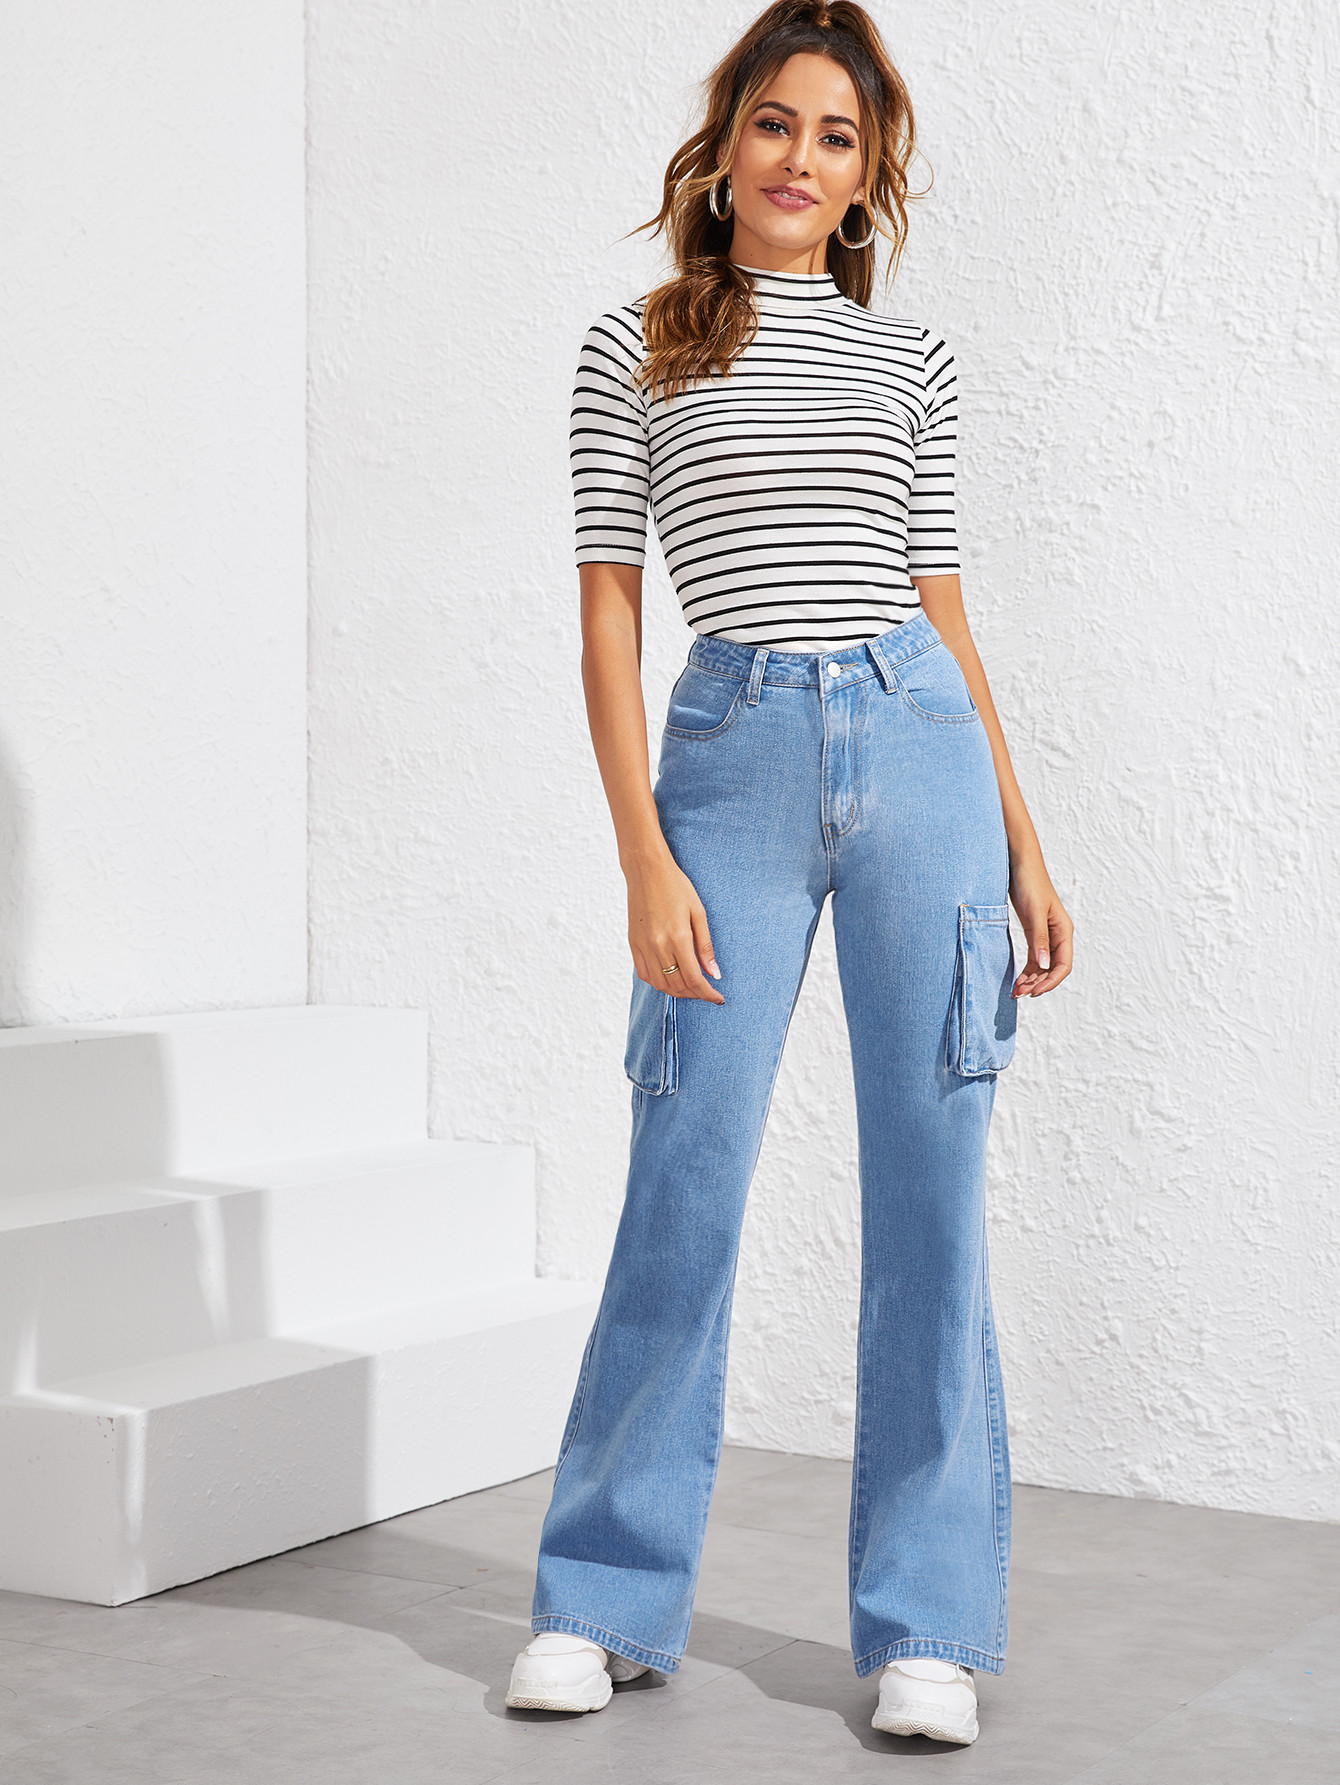 Combinações com jeans confortáveis, gola alta.